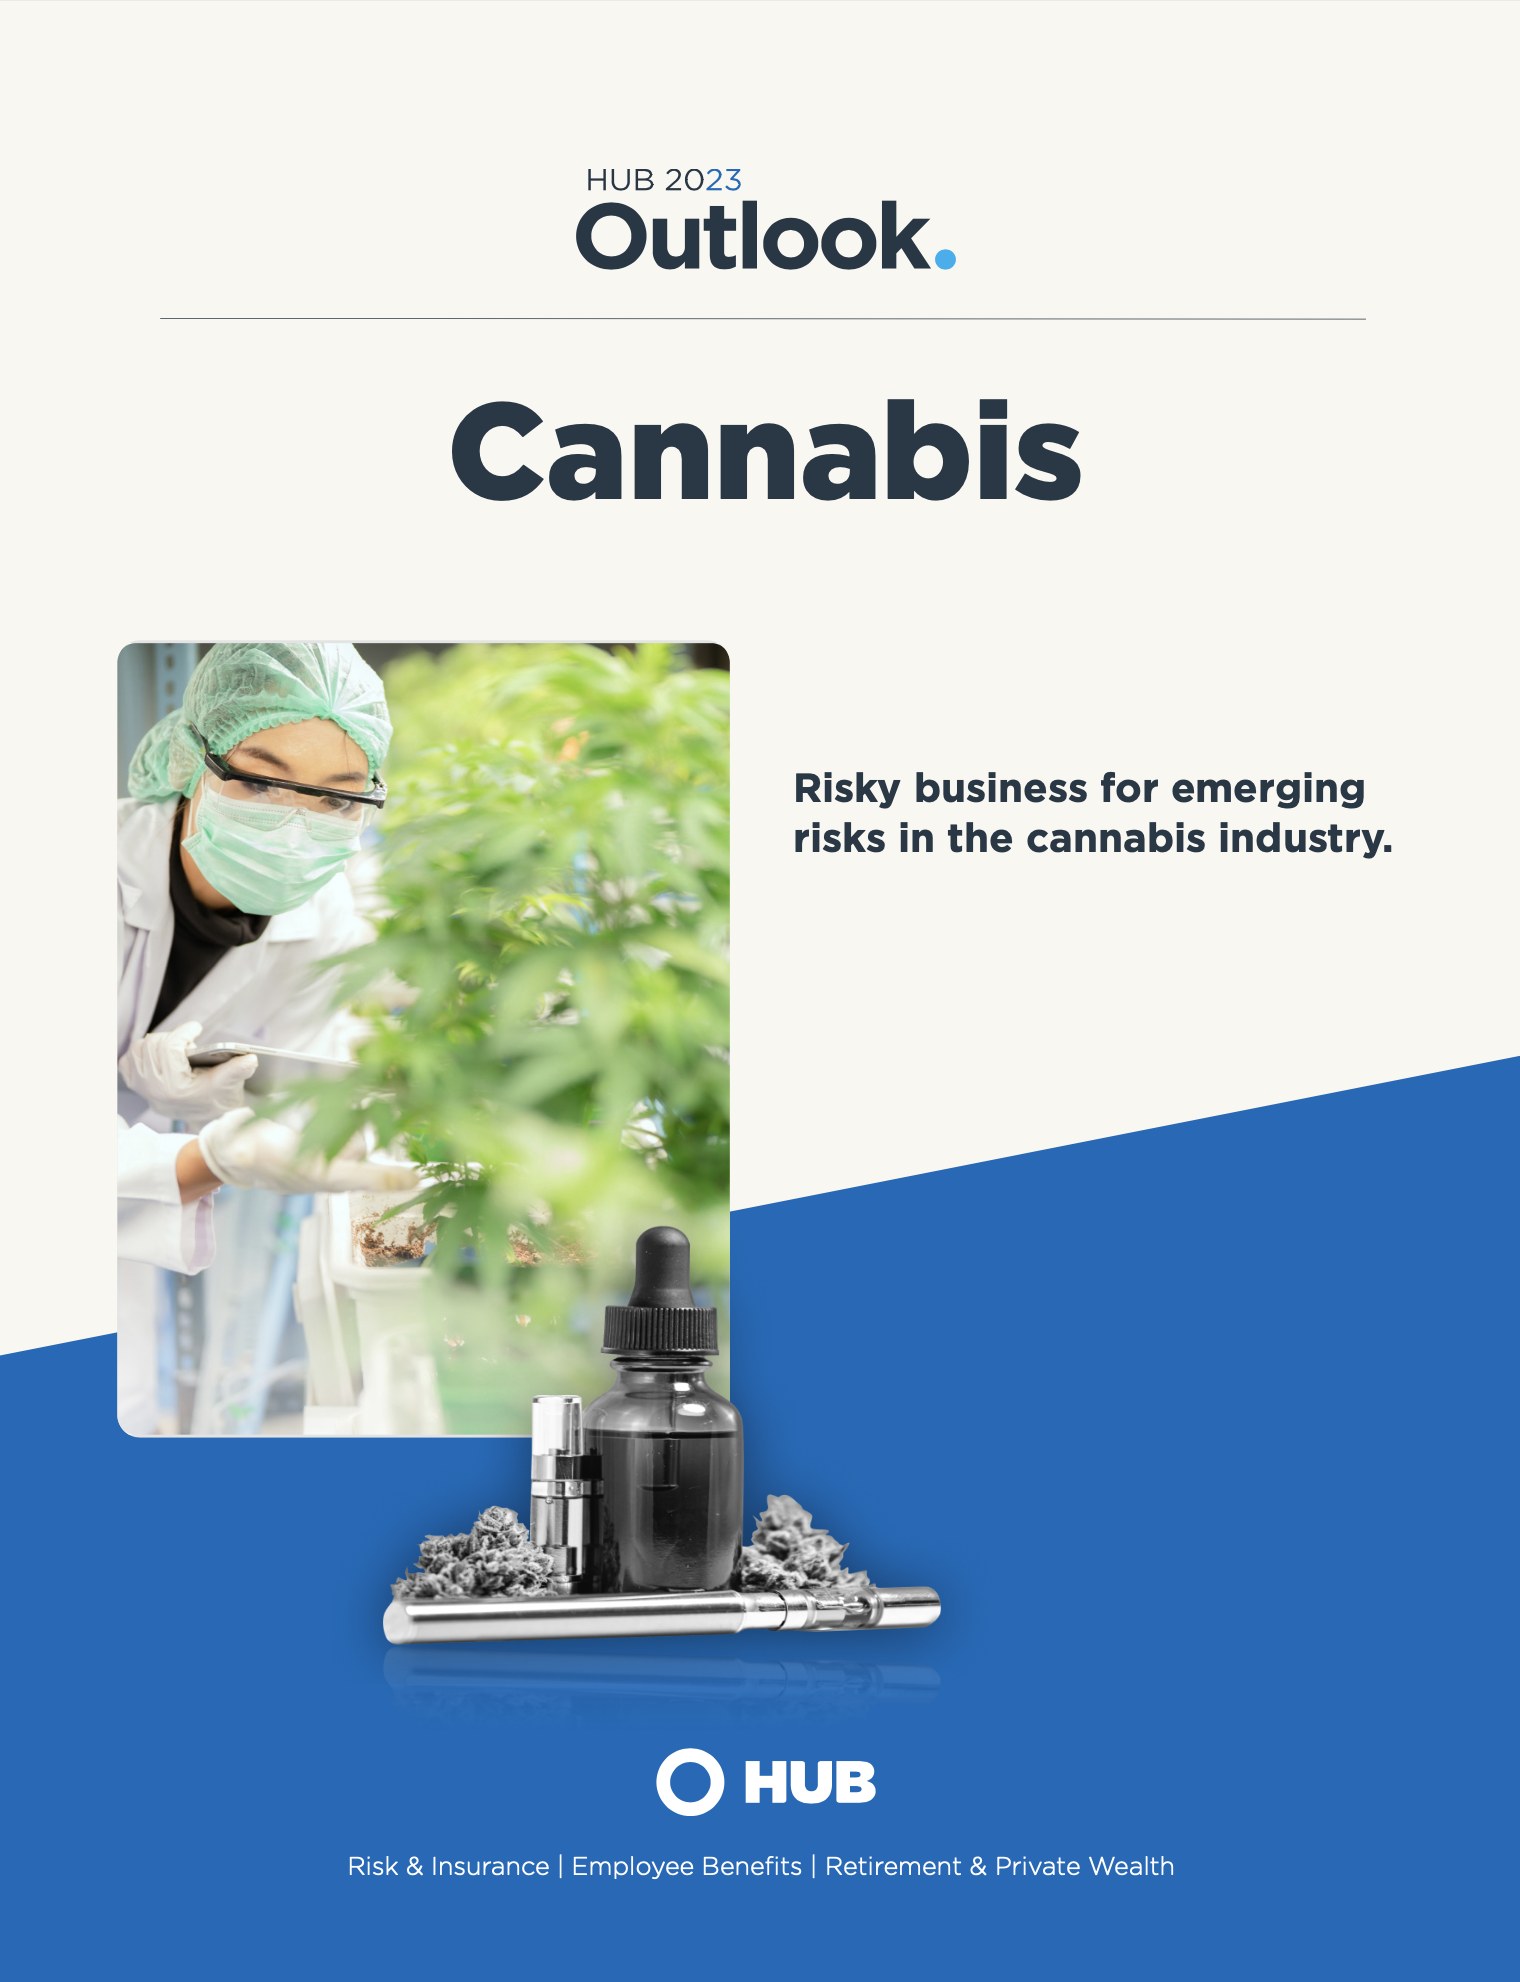 HUB 2023 Outlook: Cannabis